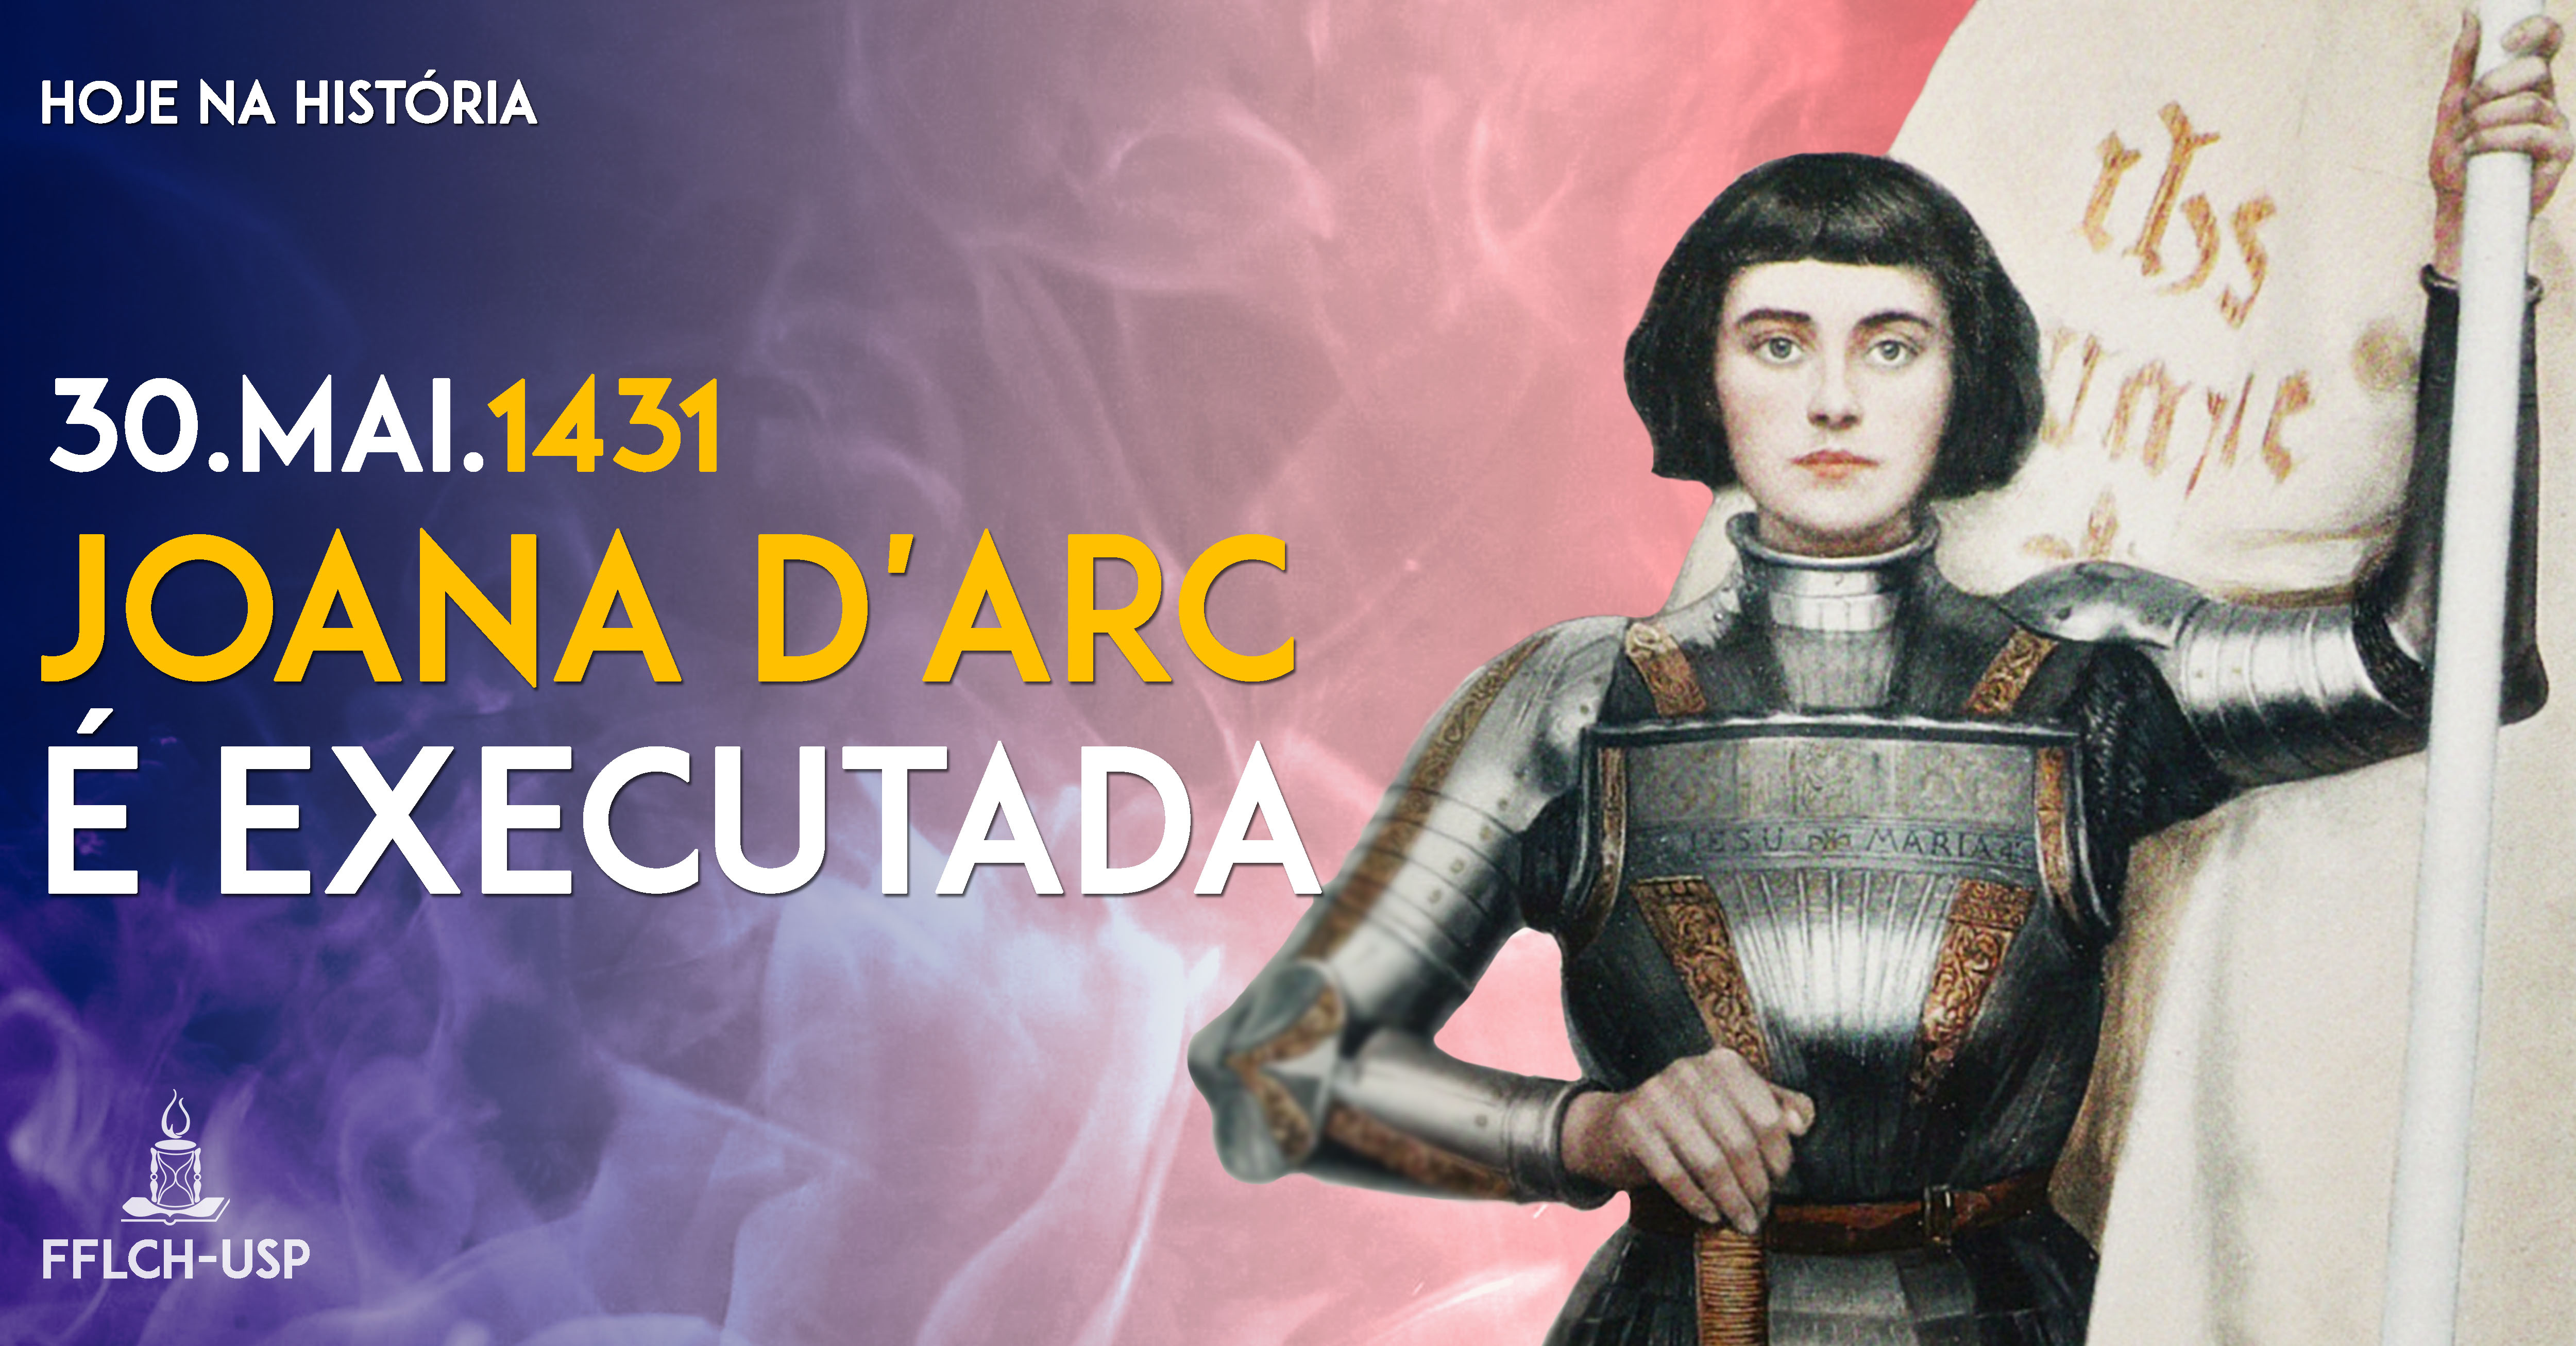 Joana d'Arc é executada pela Igreja Católica (Arte: Renan Braz)